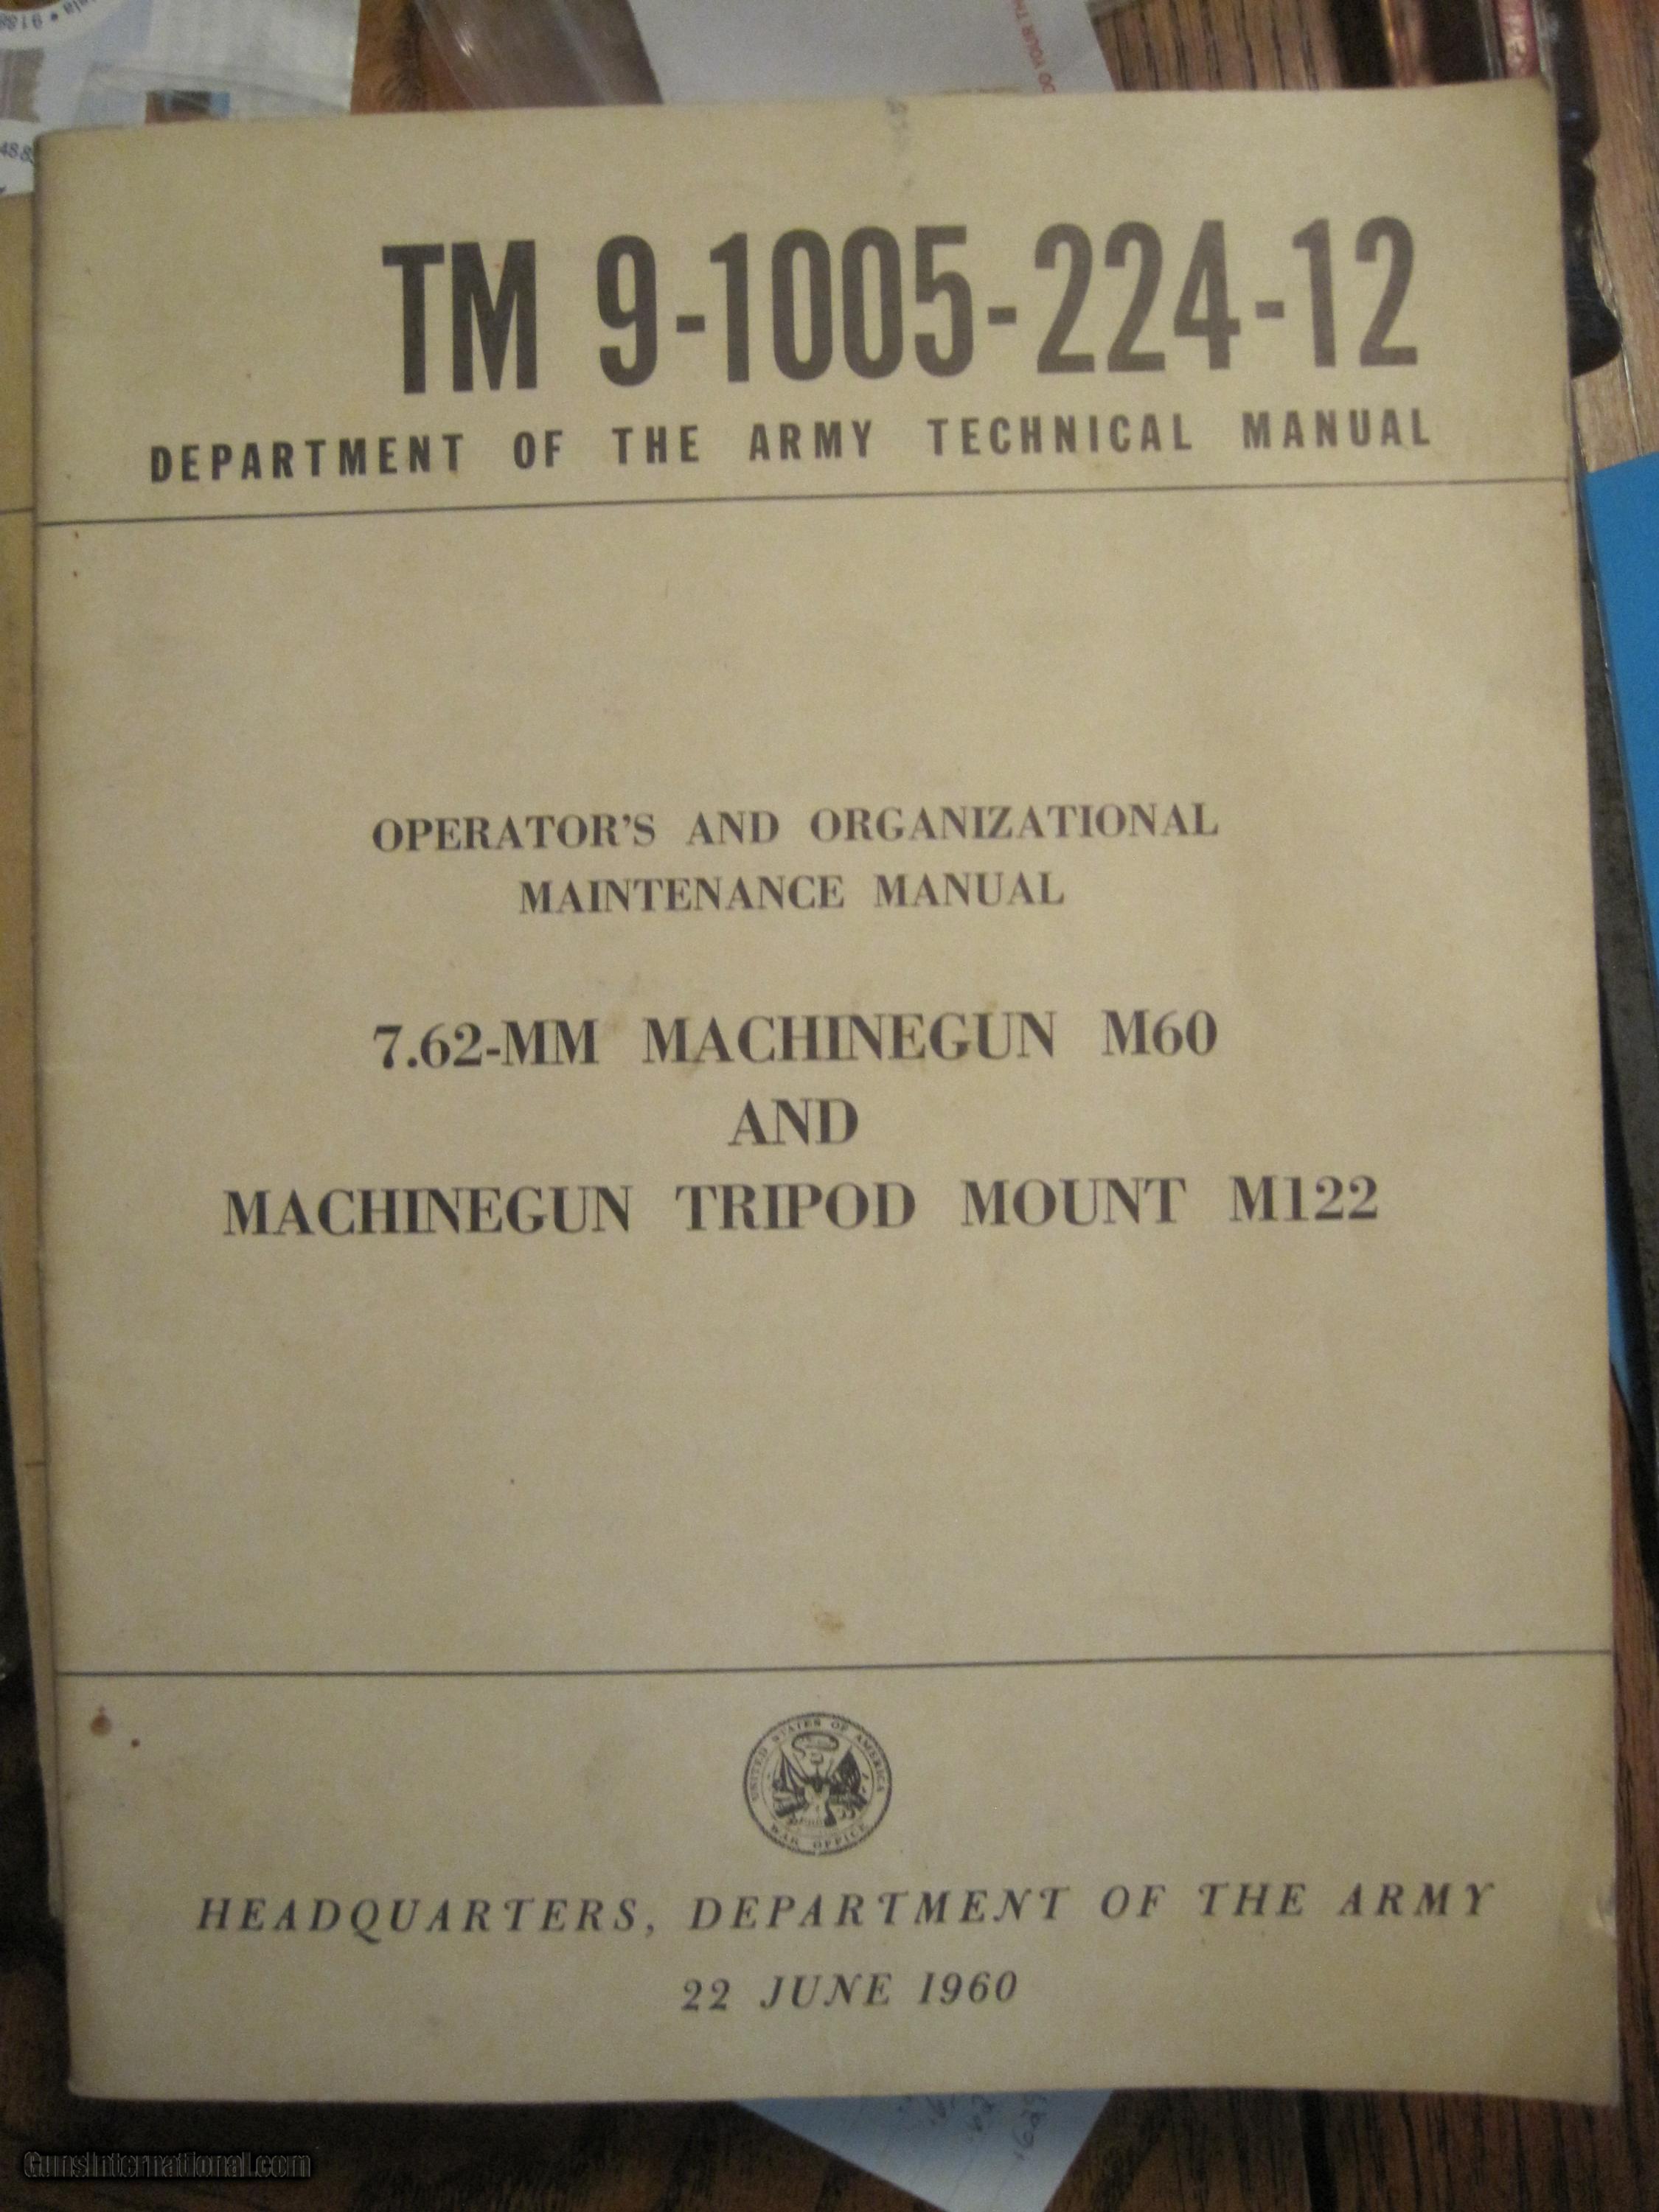 Army Technical Manual for M60 7.62 Machinegun